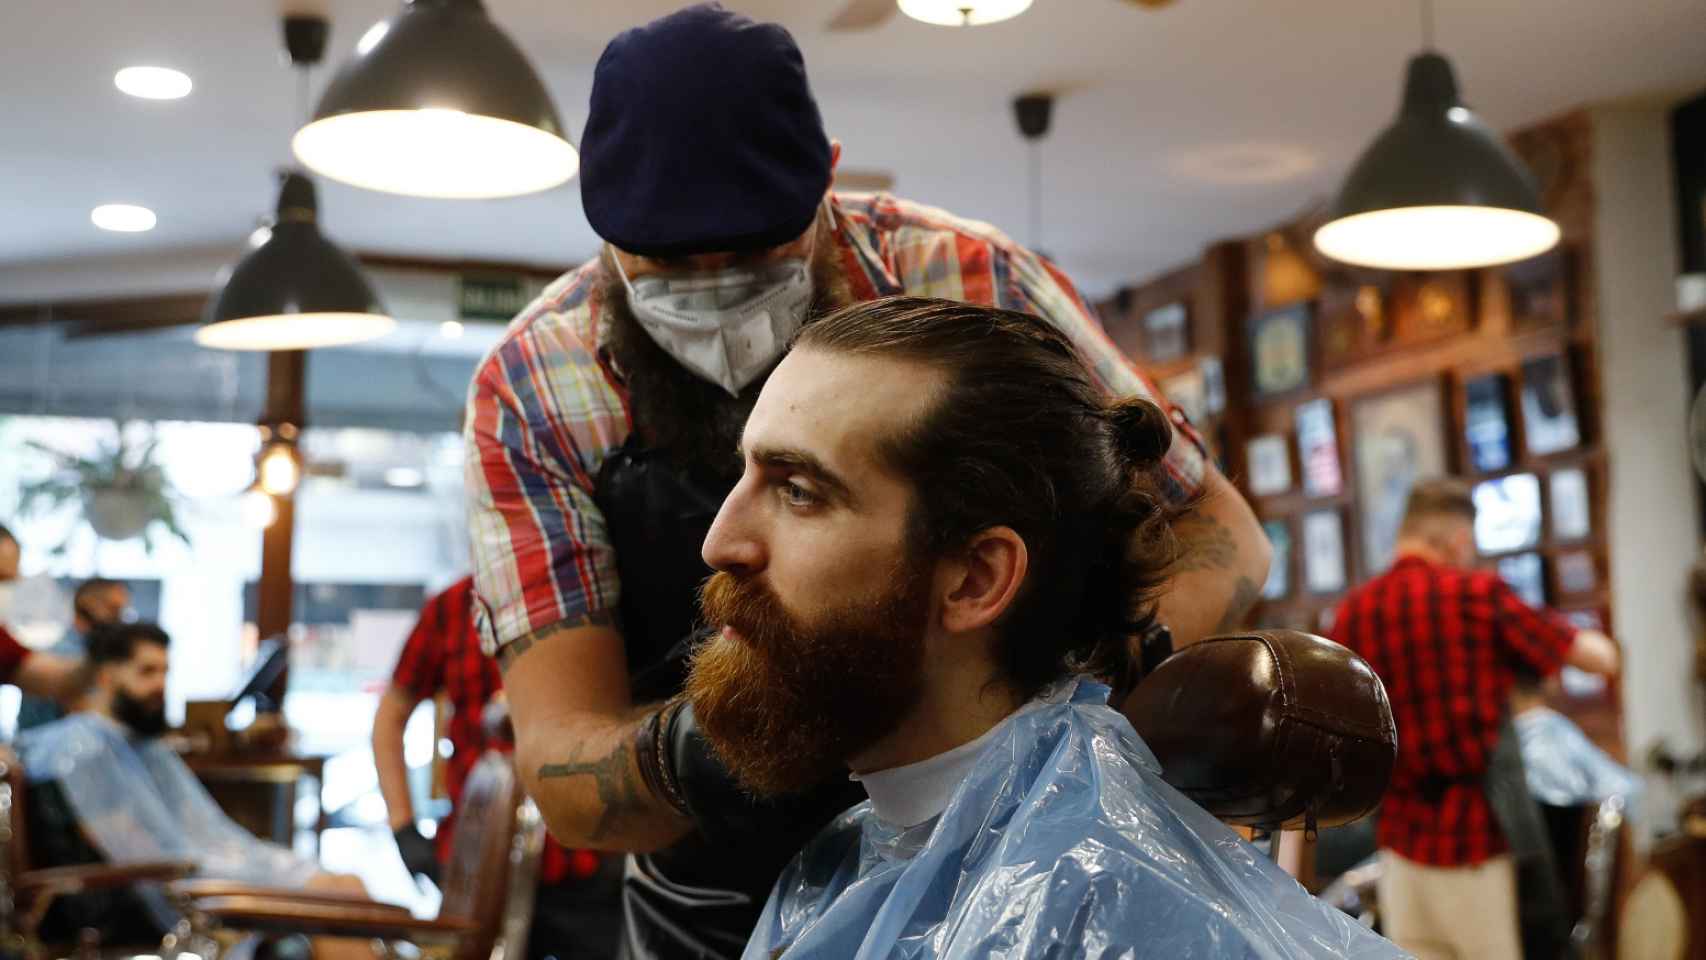 Peluquero arreglando una barba.